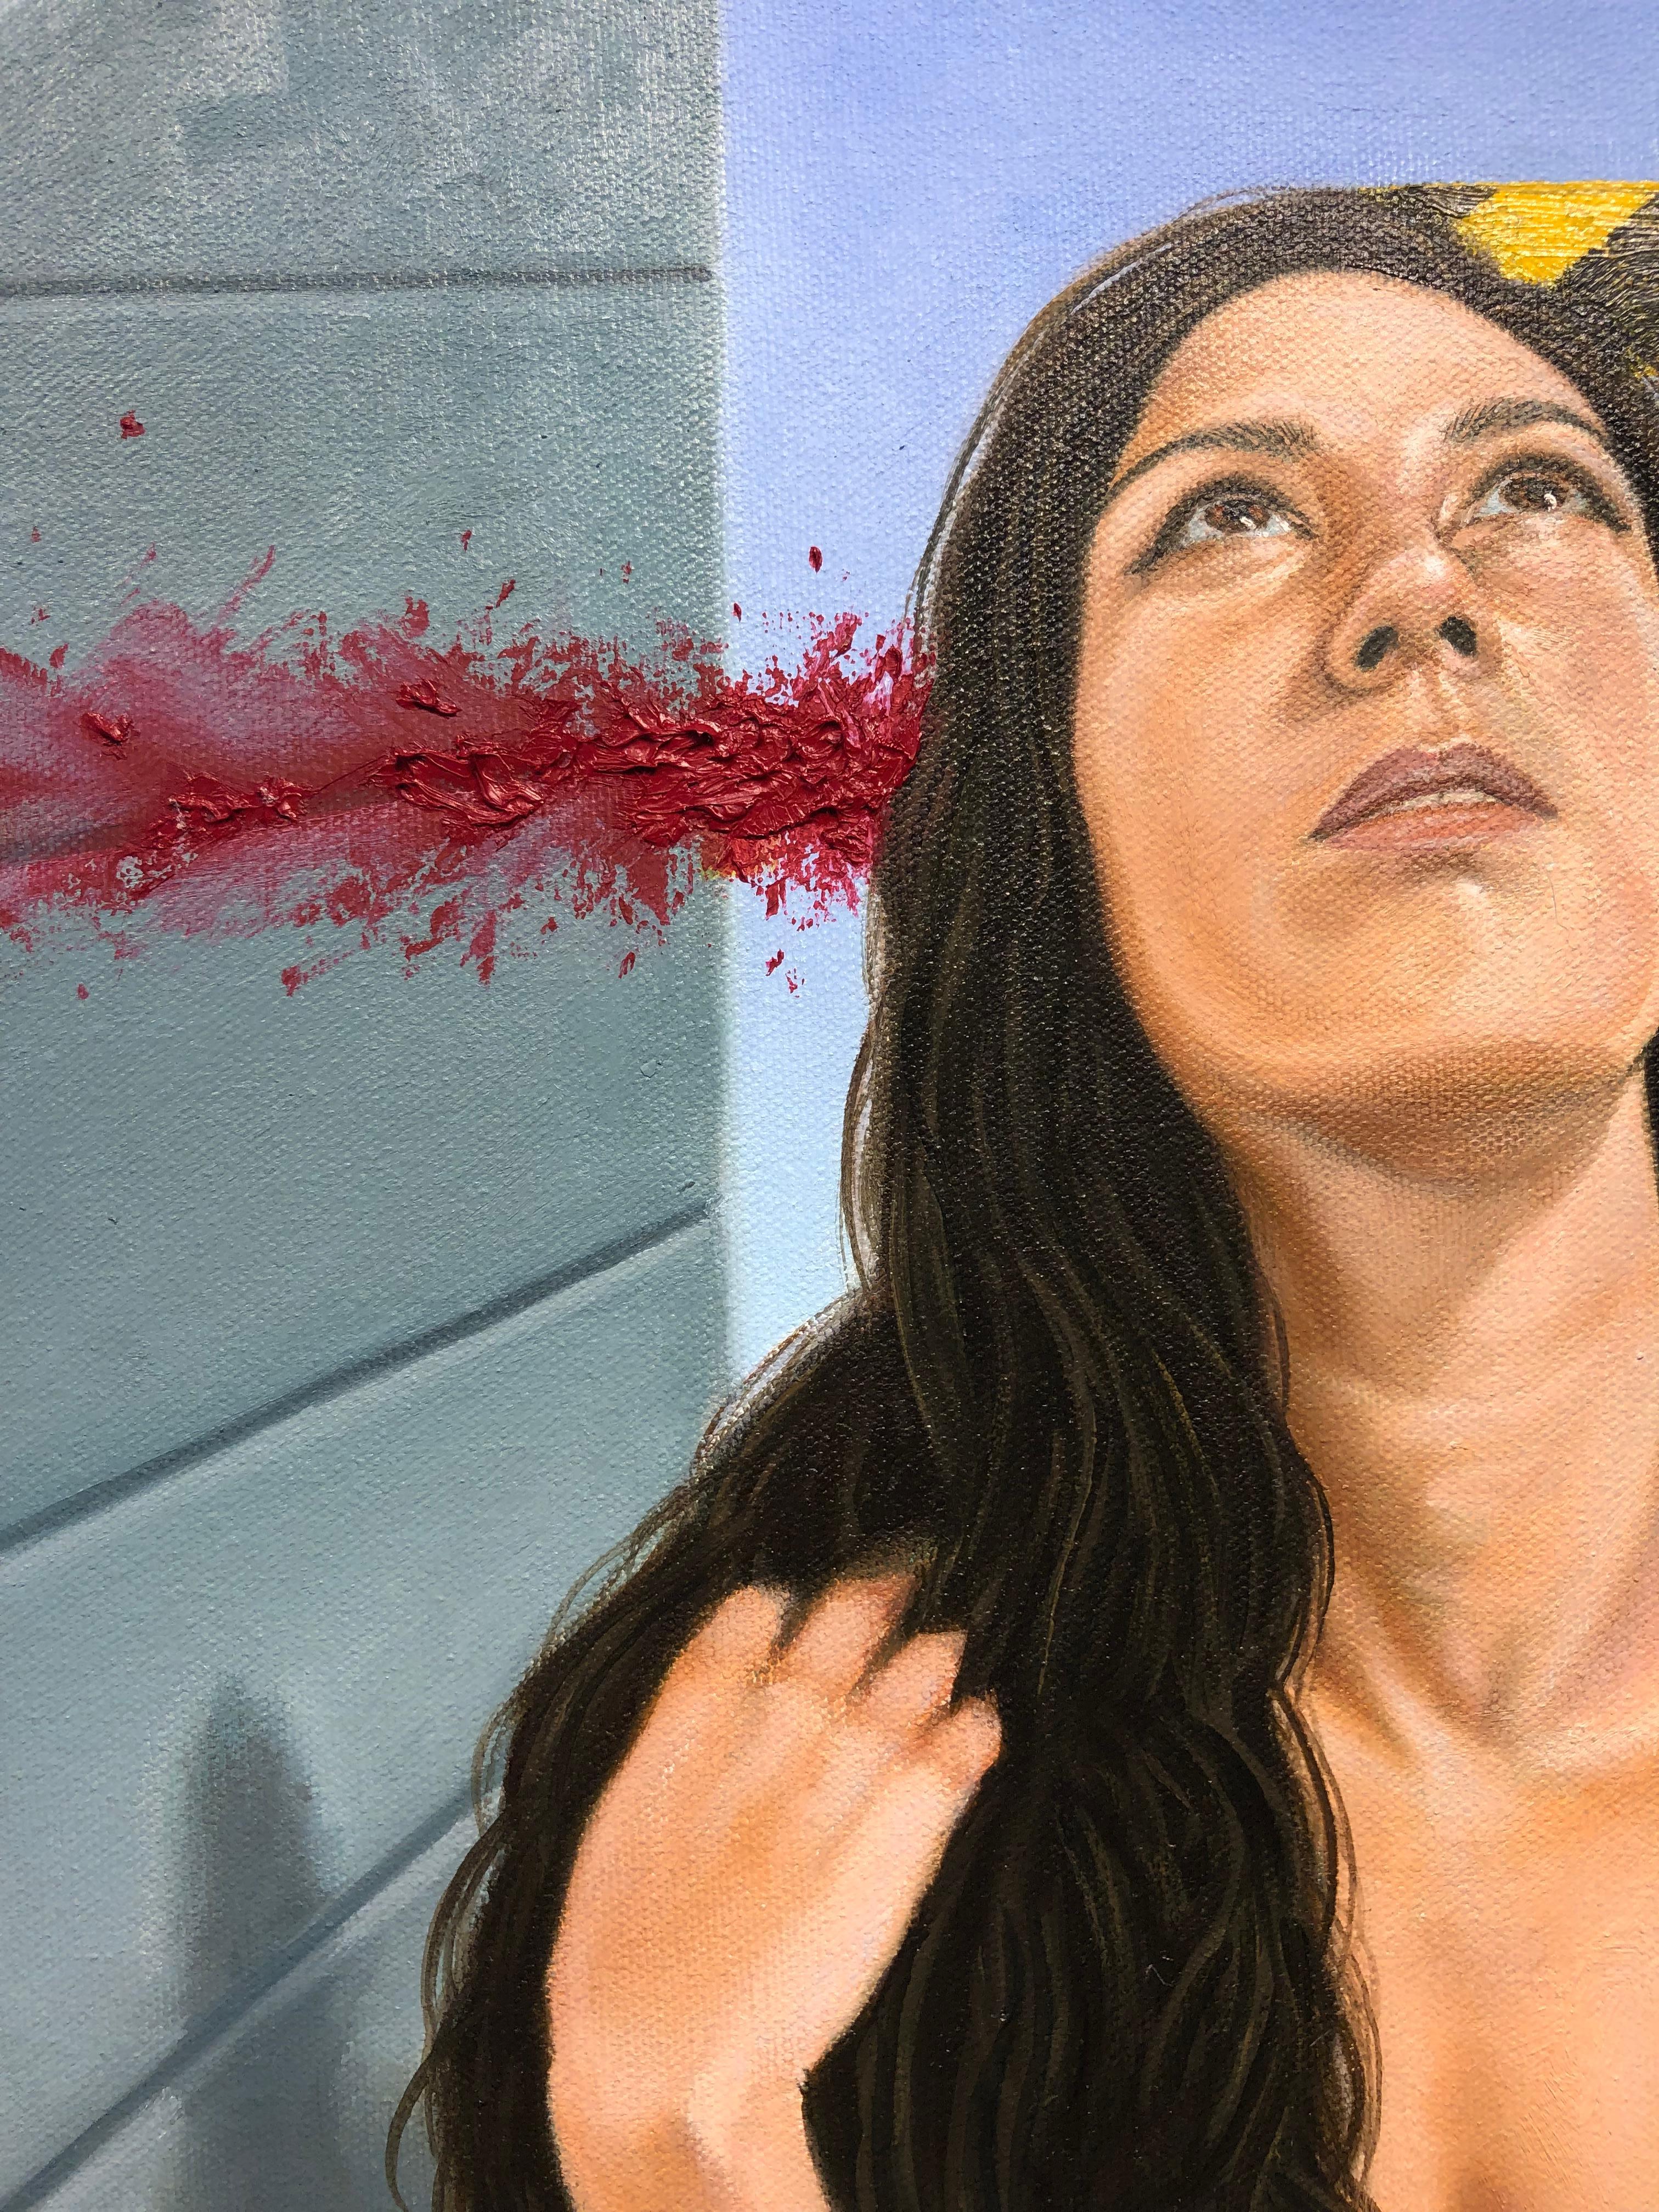 « Comfort Zone », figure féminine nue accrochée, regardant vers le haut, huile sur toile - Painting de Juan Barragán